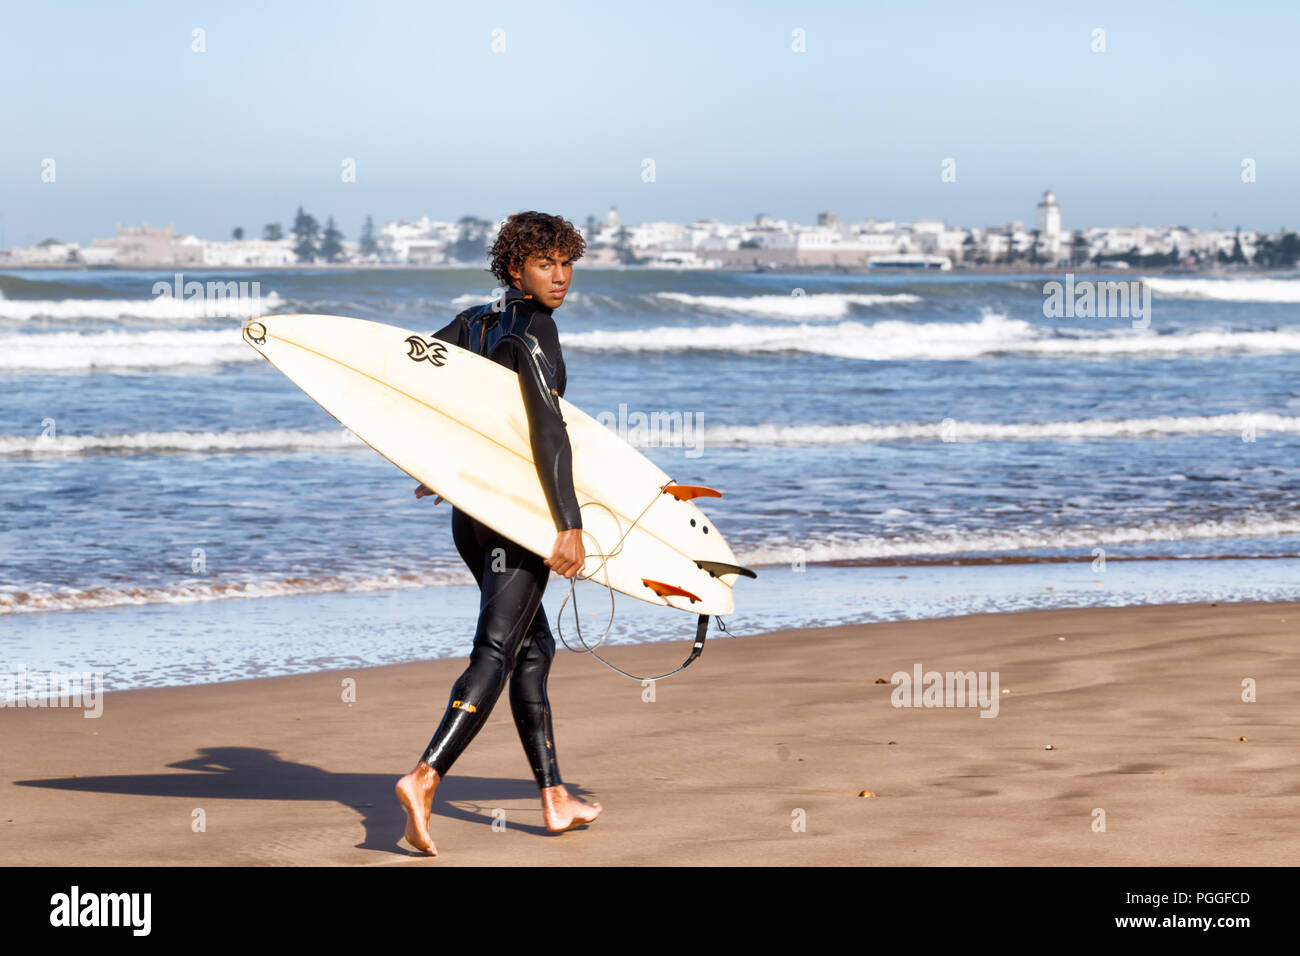 ESSAOUIRA, MAROKKO - Dec 22, 2012: unbekannter Surfer mit einem Surfbrett auf dem Sand am Wasser entlang in Essaouira, Marokko, gelegen am Atlantik c Stockfoto